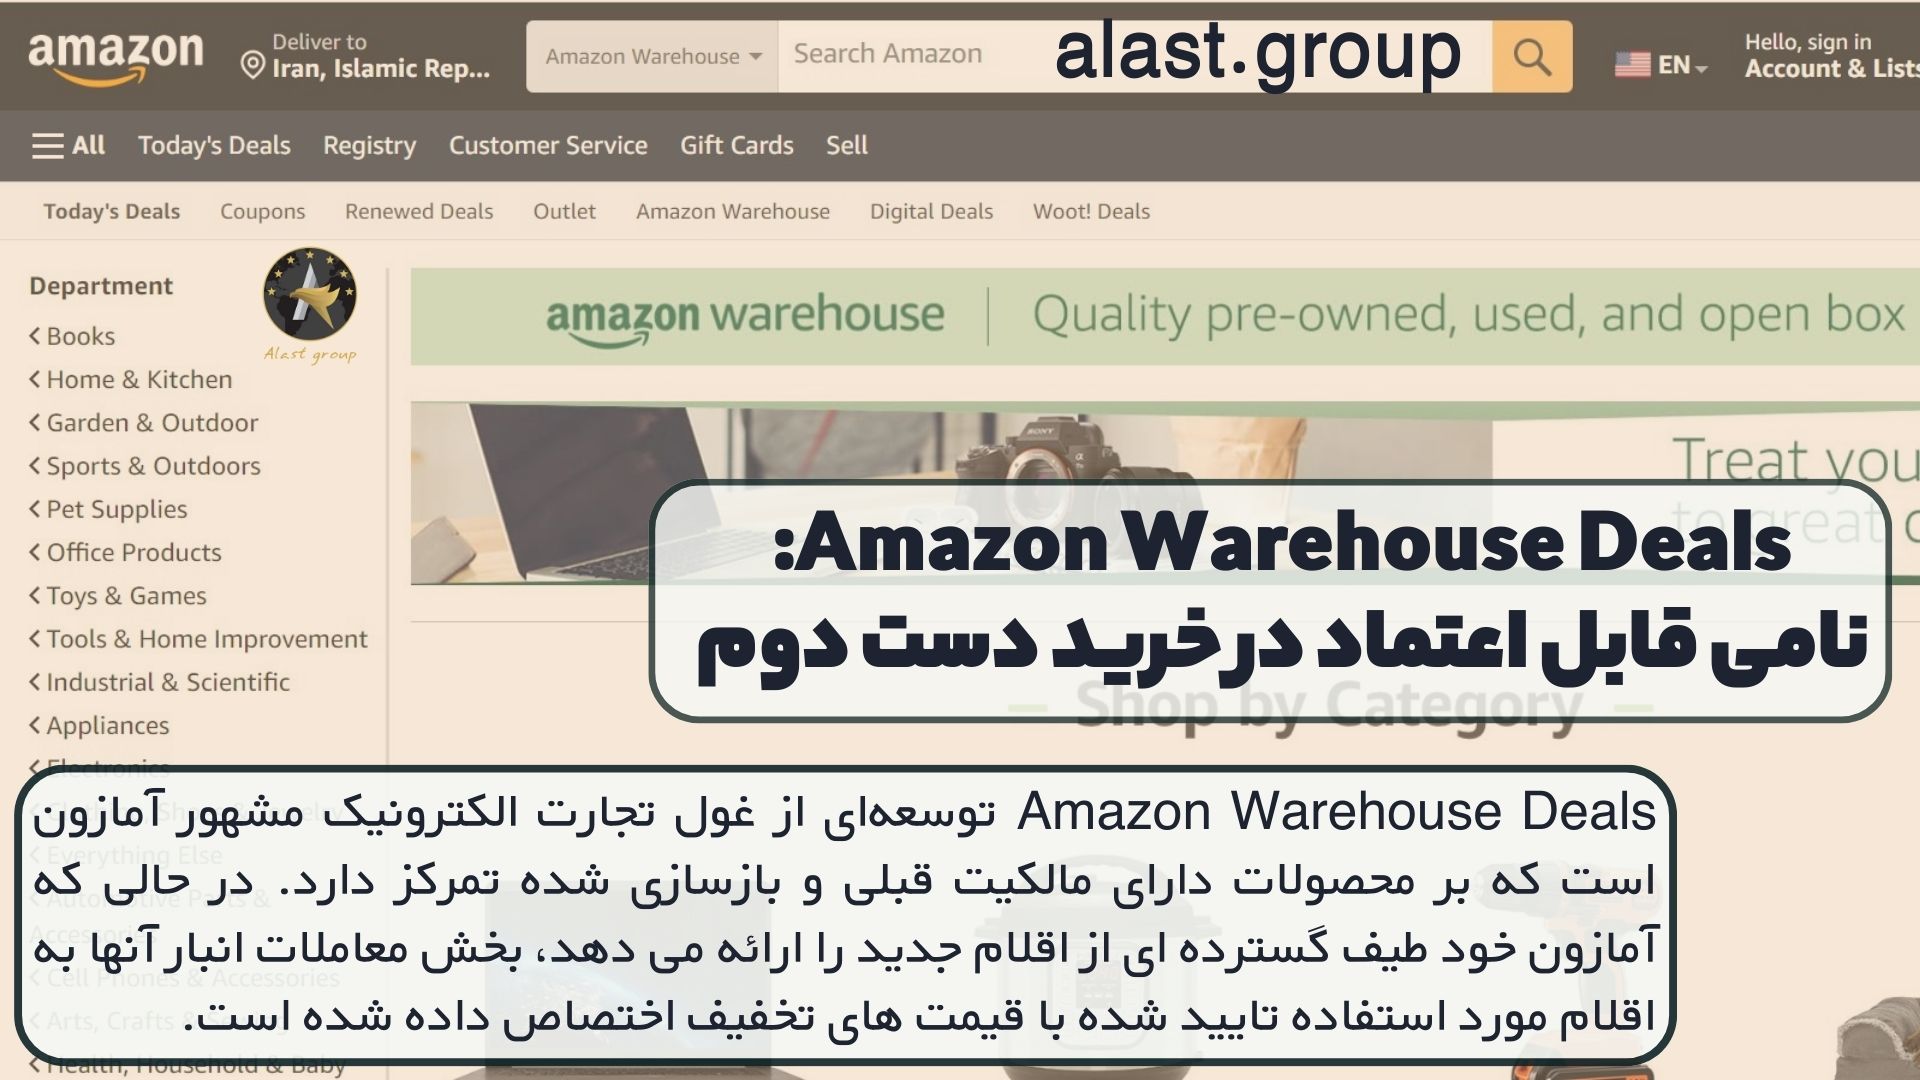 Amazon Warehouse Deals: نامی قابل اعتماد در خرید دست دوم